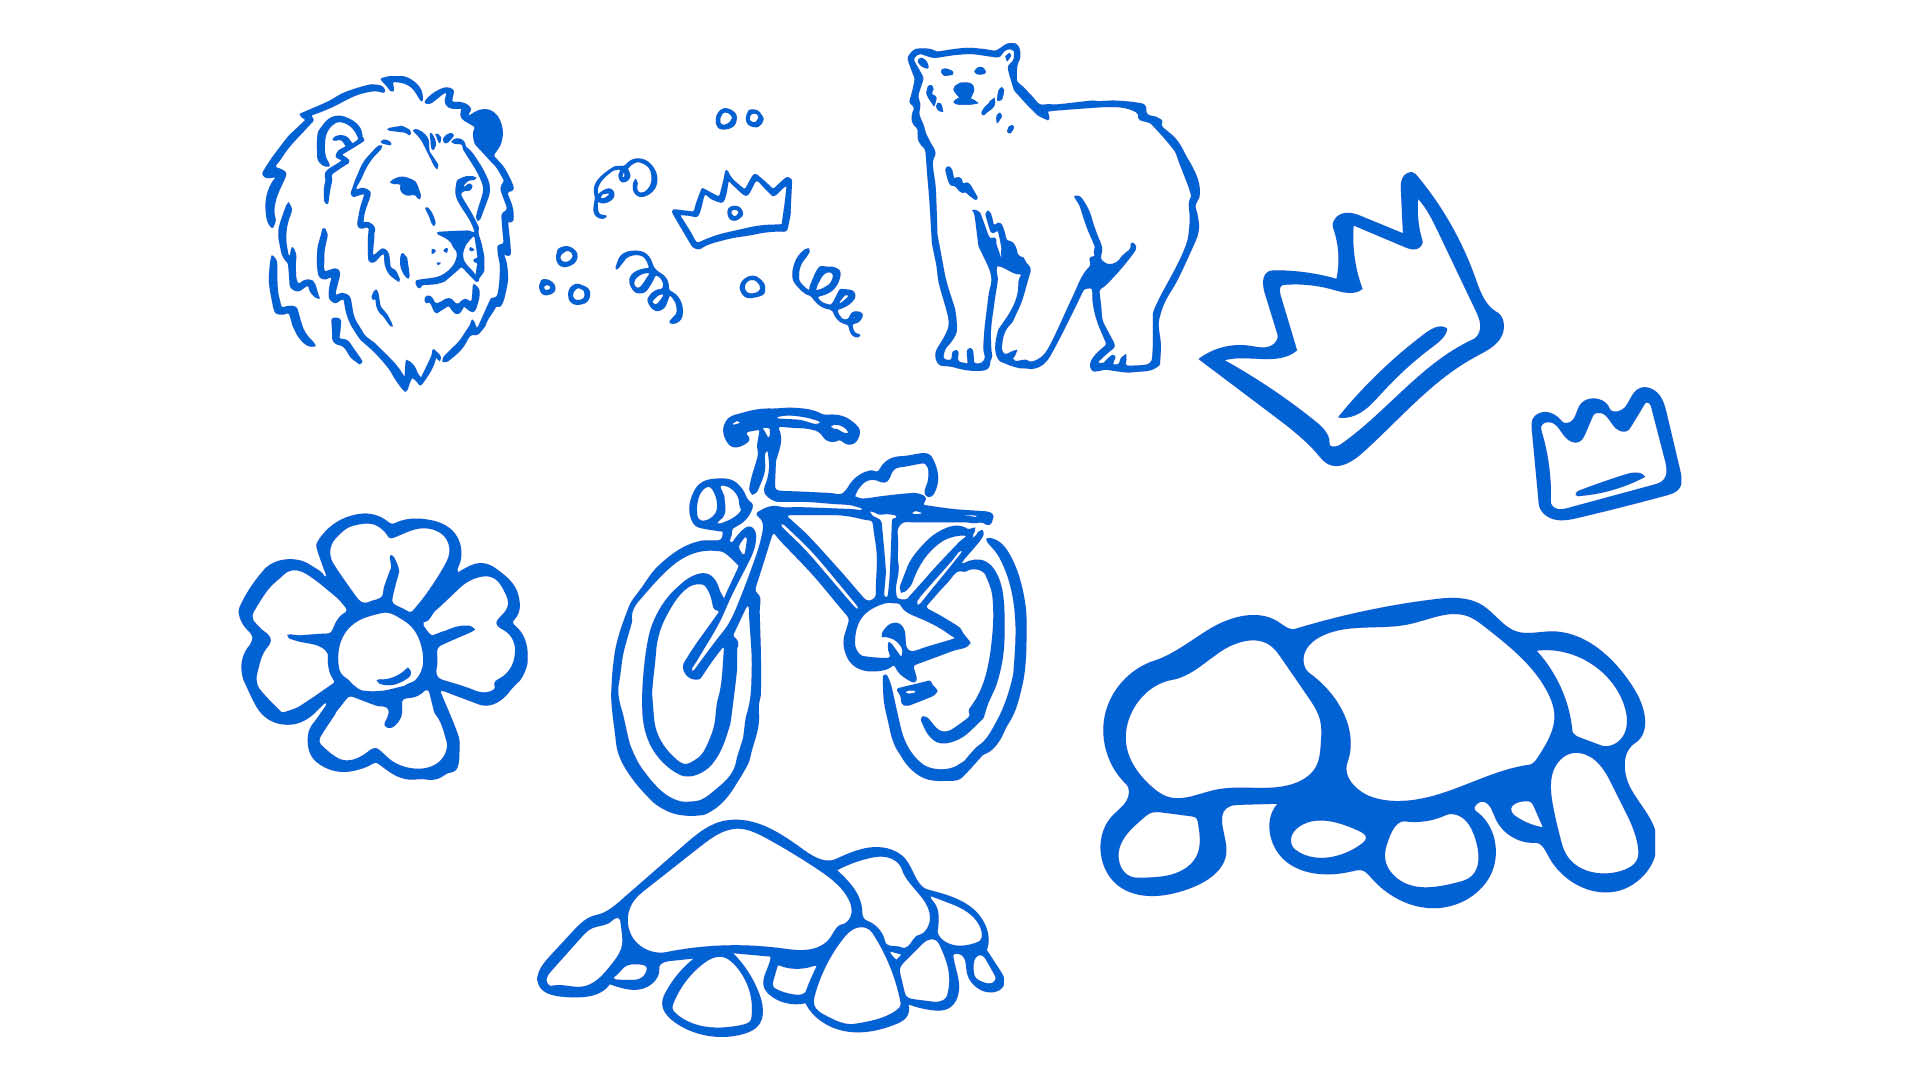 Doedels van dieren, kroontjes, bloemen, fiets, hunebedden in het blauw.